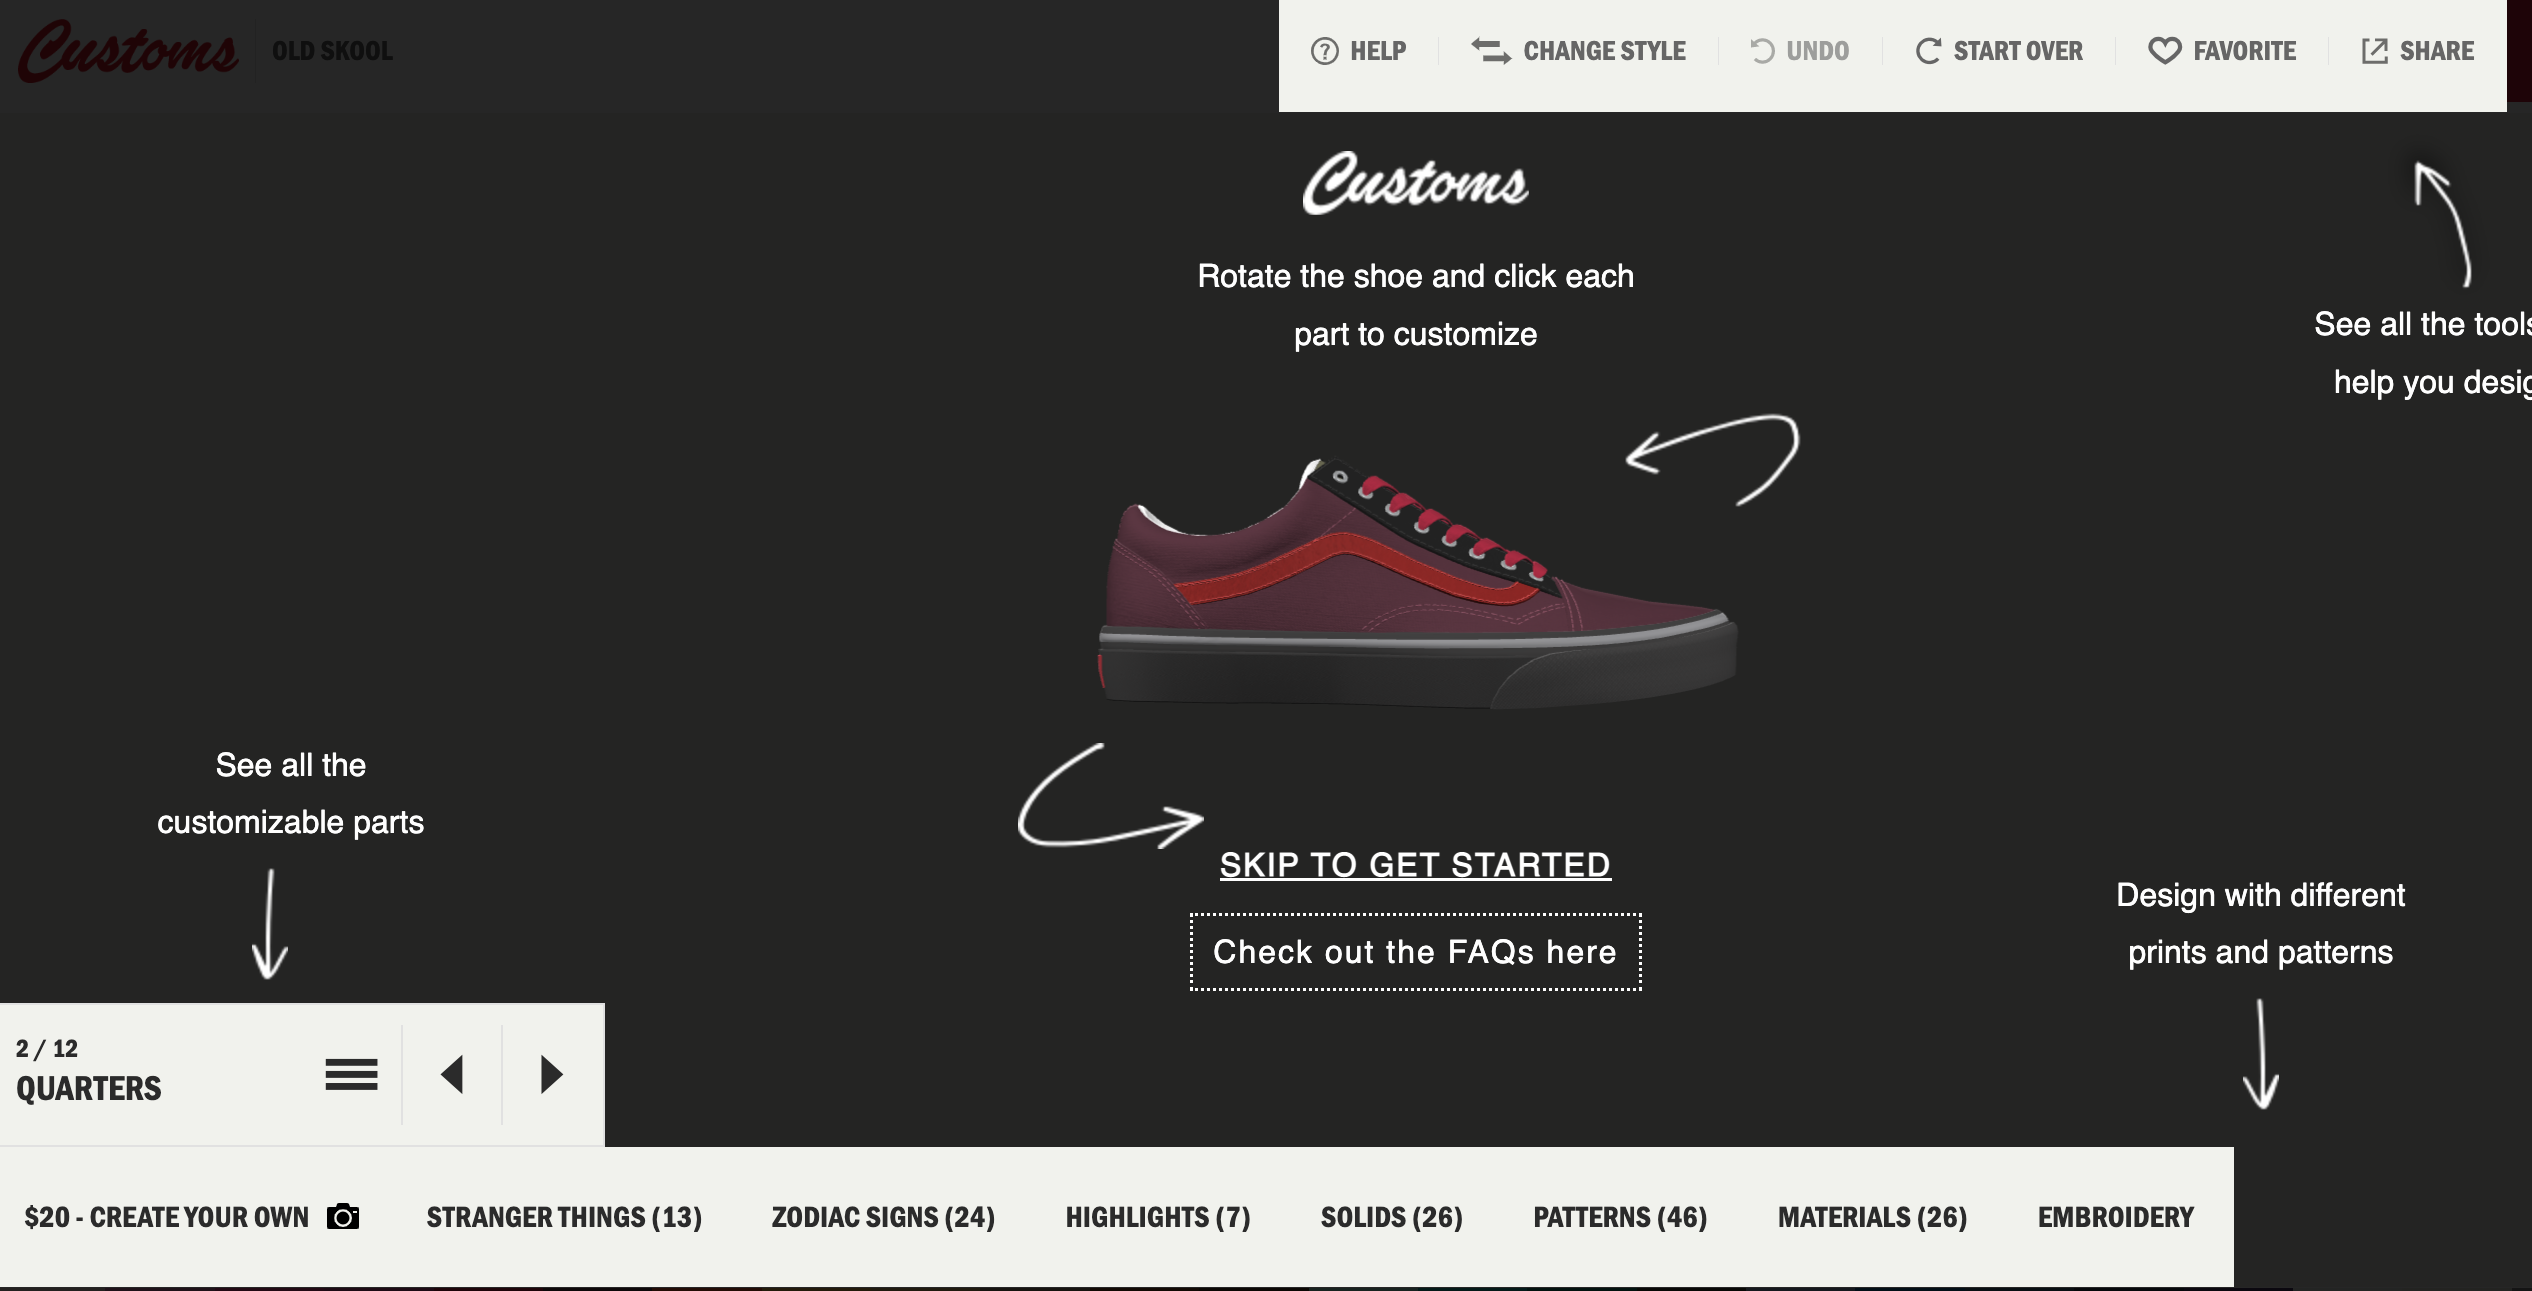 Una vista previa de la aplicación de diseñador de zapatos en Vans.com